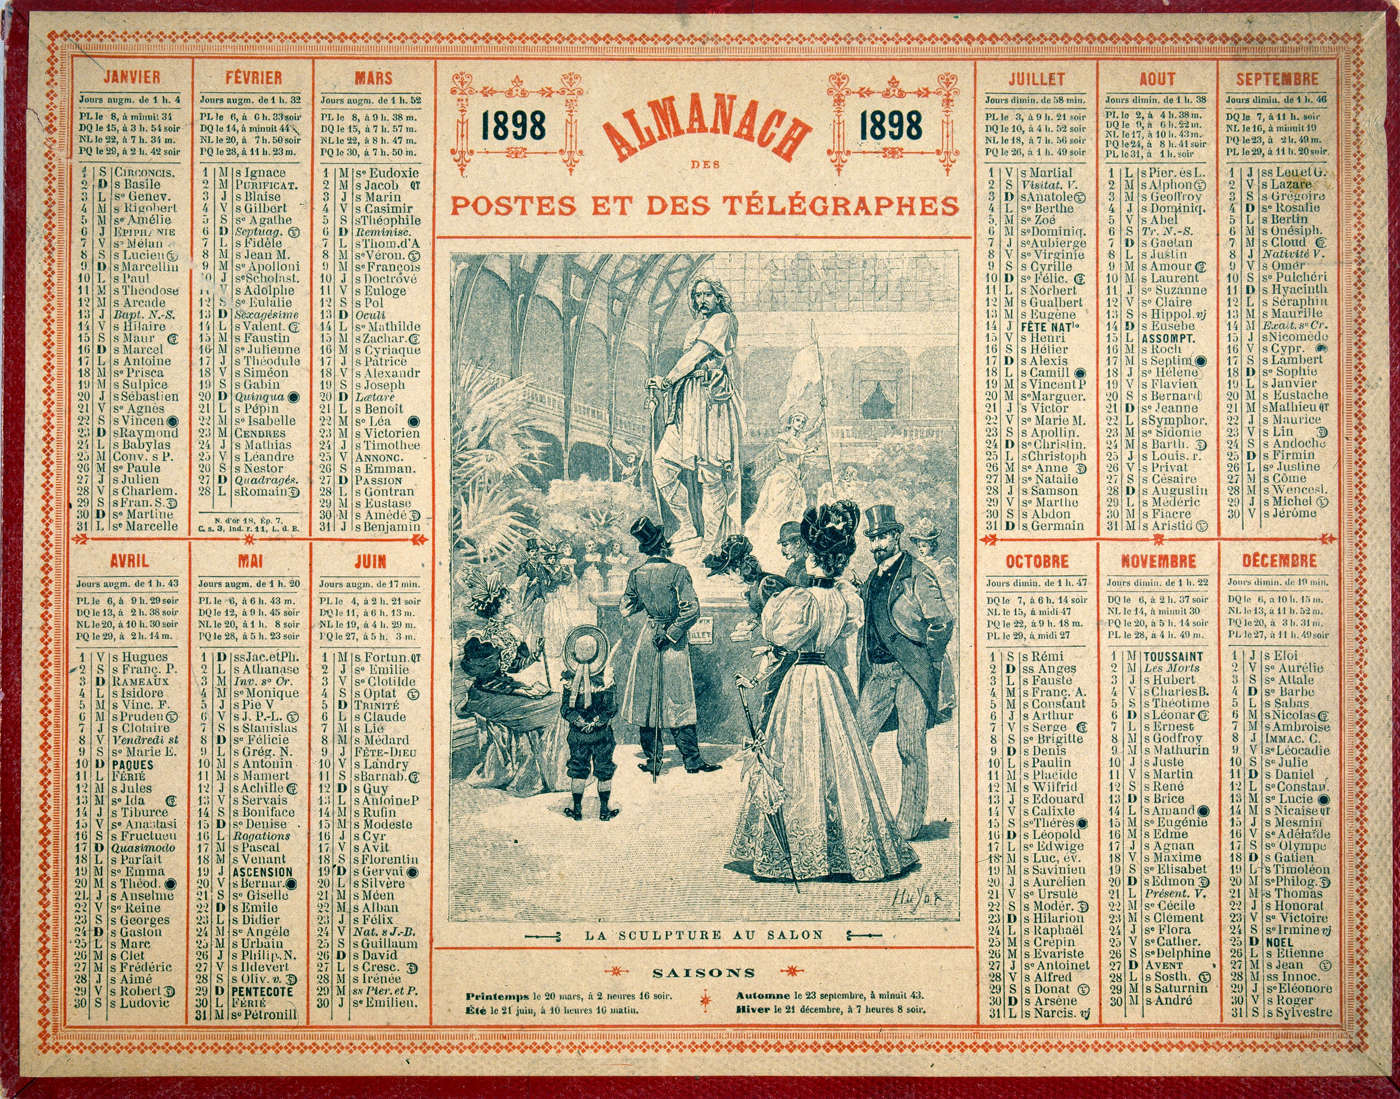 CALENDRIER ALMANACH DES POSTES ET TELEGRAPHES 1945